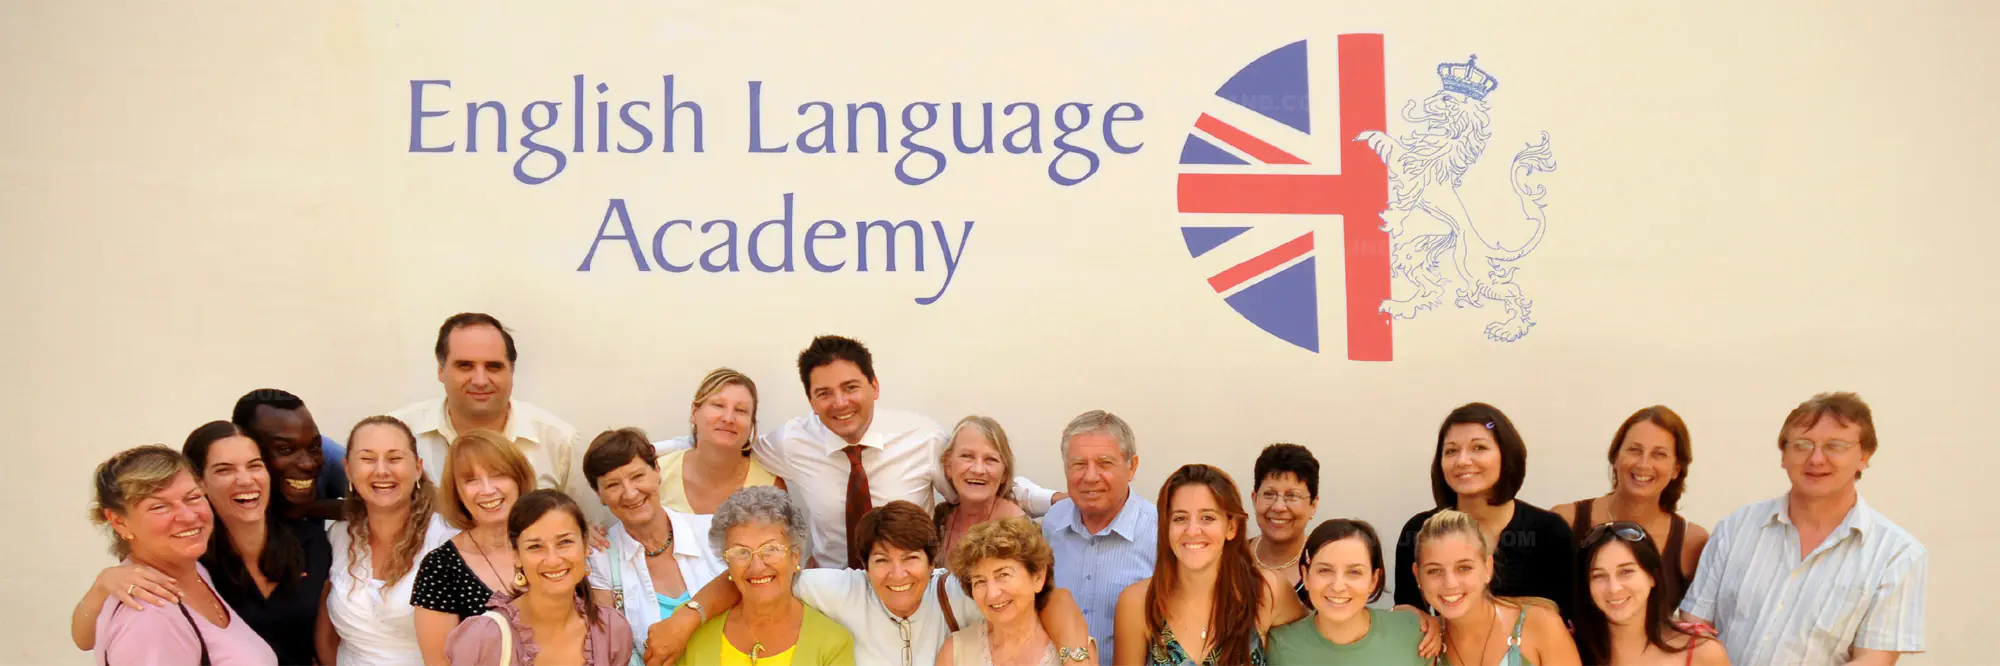 Programas inglés + trabajo remunerado de English Language Academy